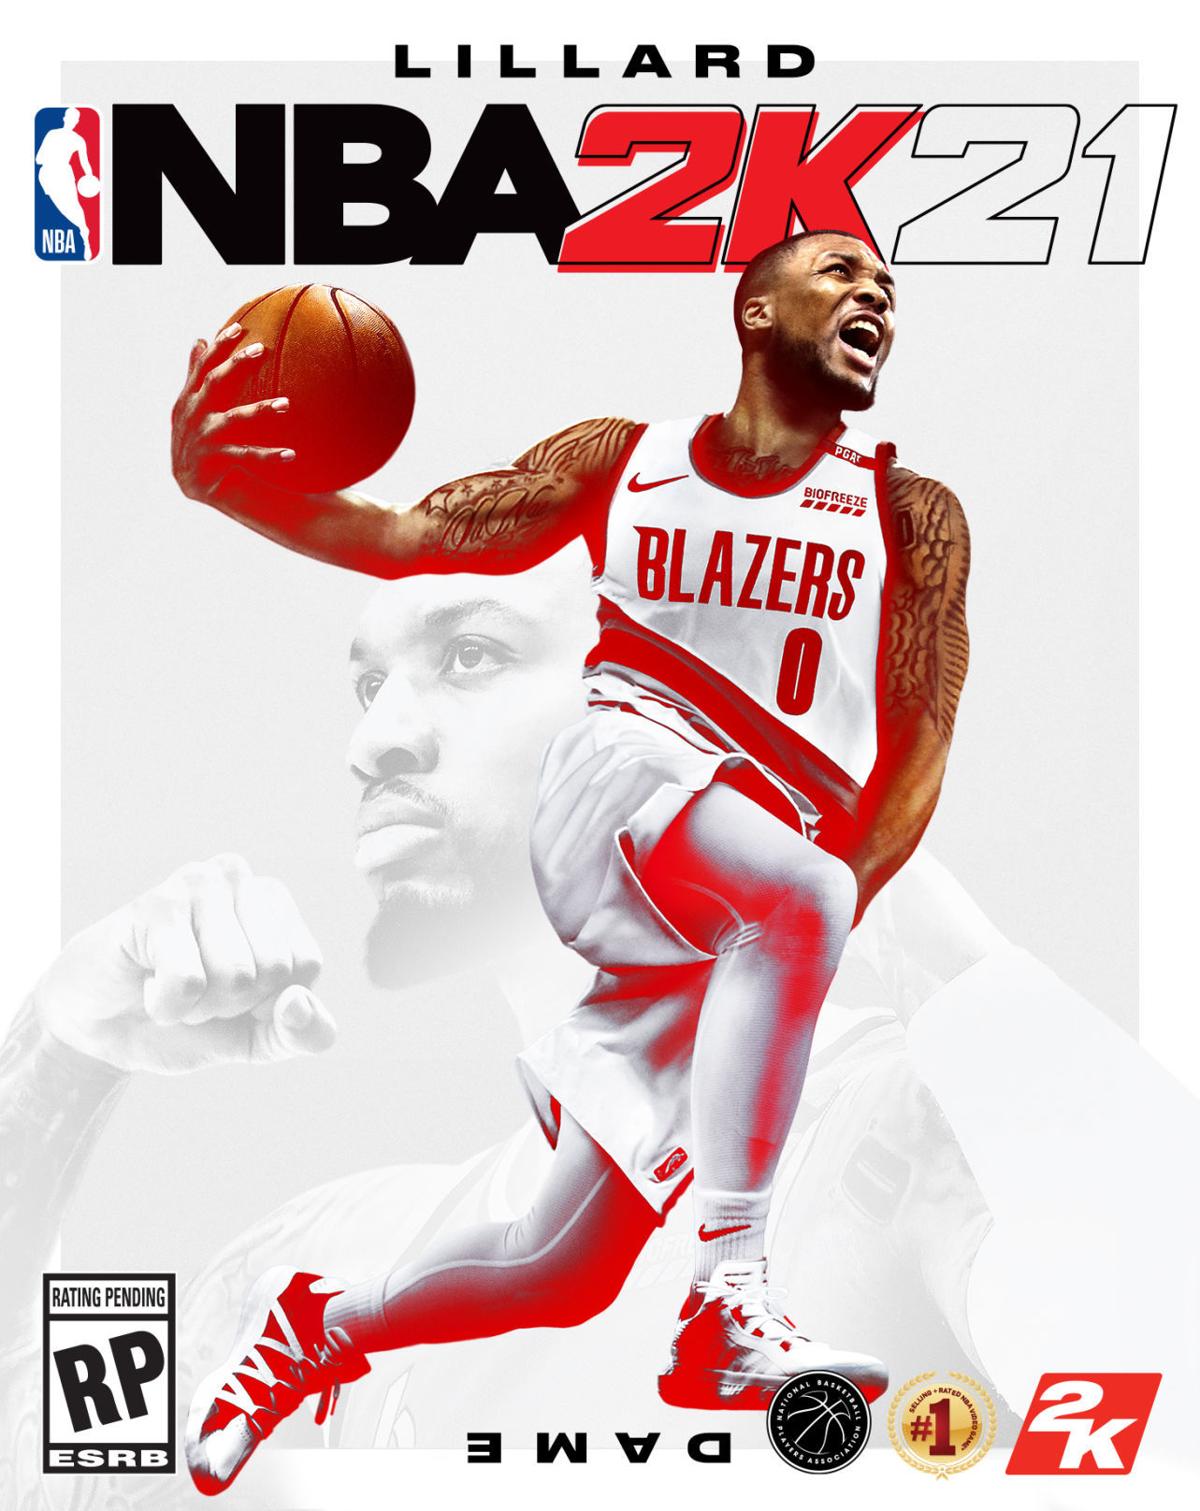 PLAYLIST: NBA2k21 Soundtrack